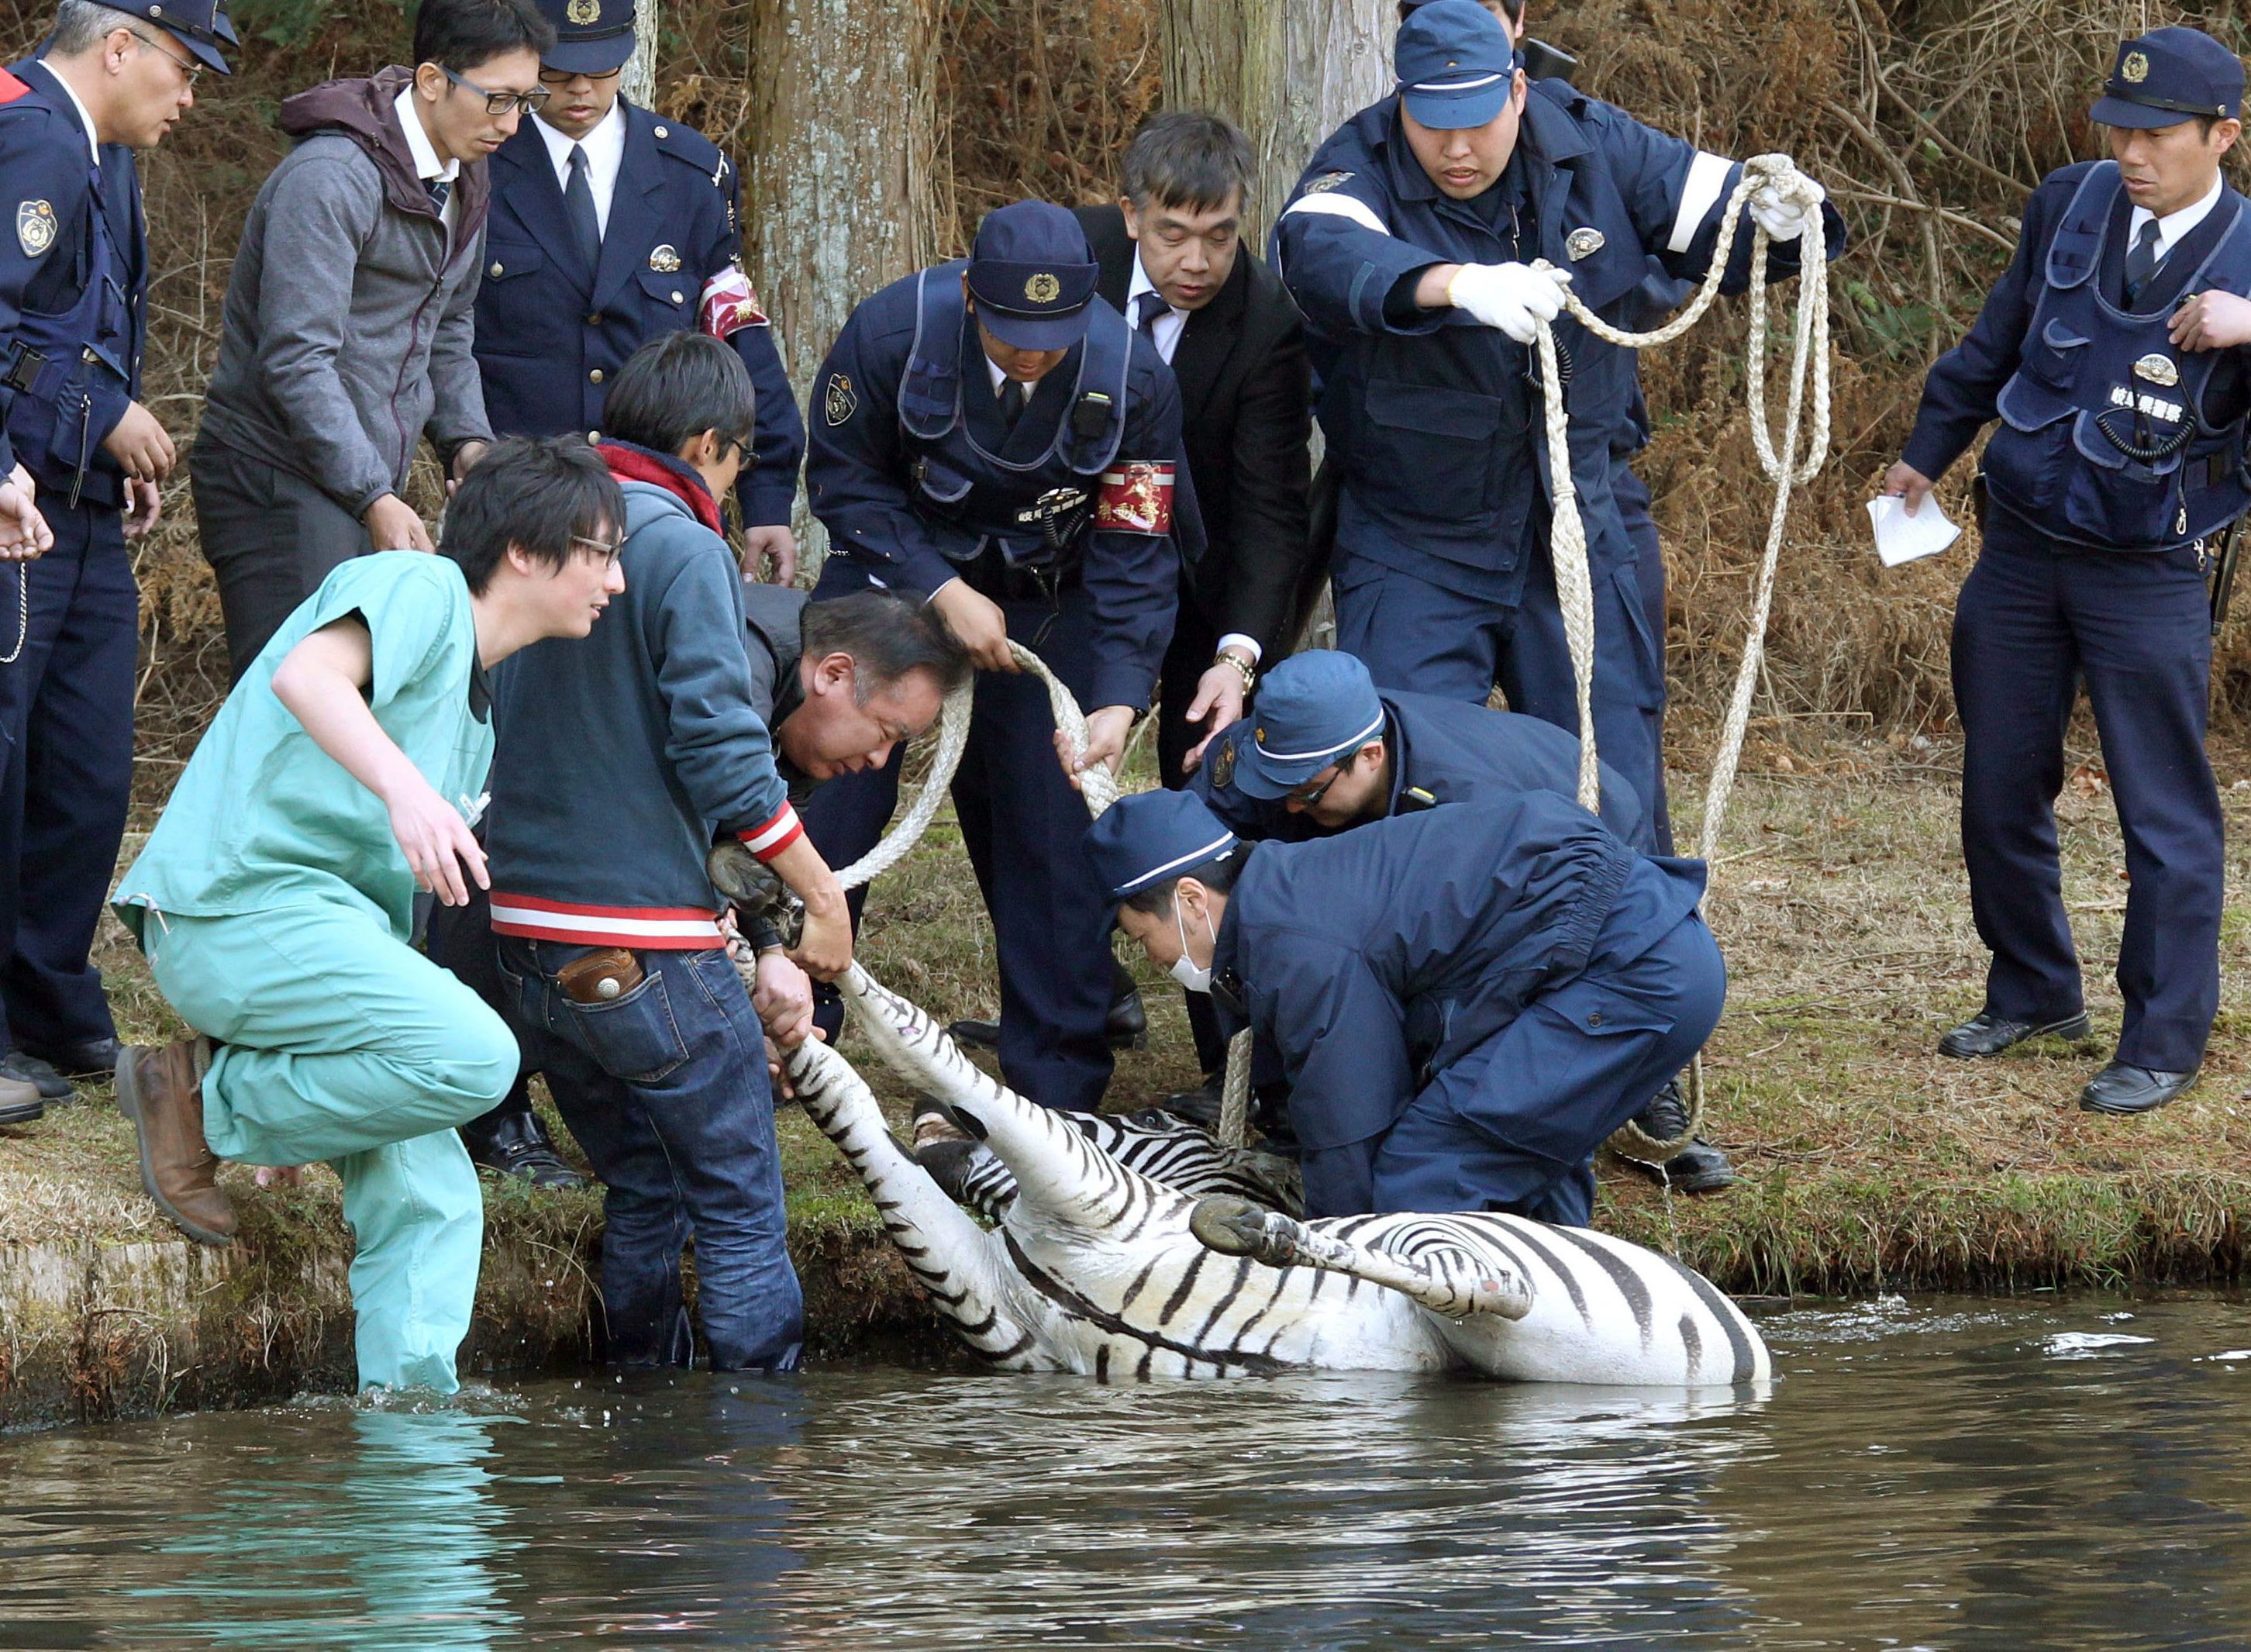 Tóba ölte magát a japán rendőrök elől menekülő zebra